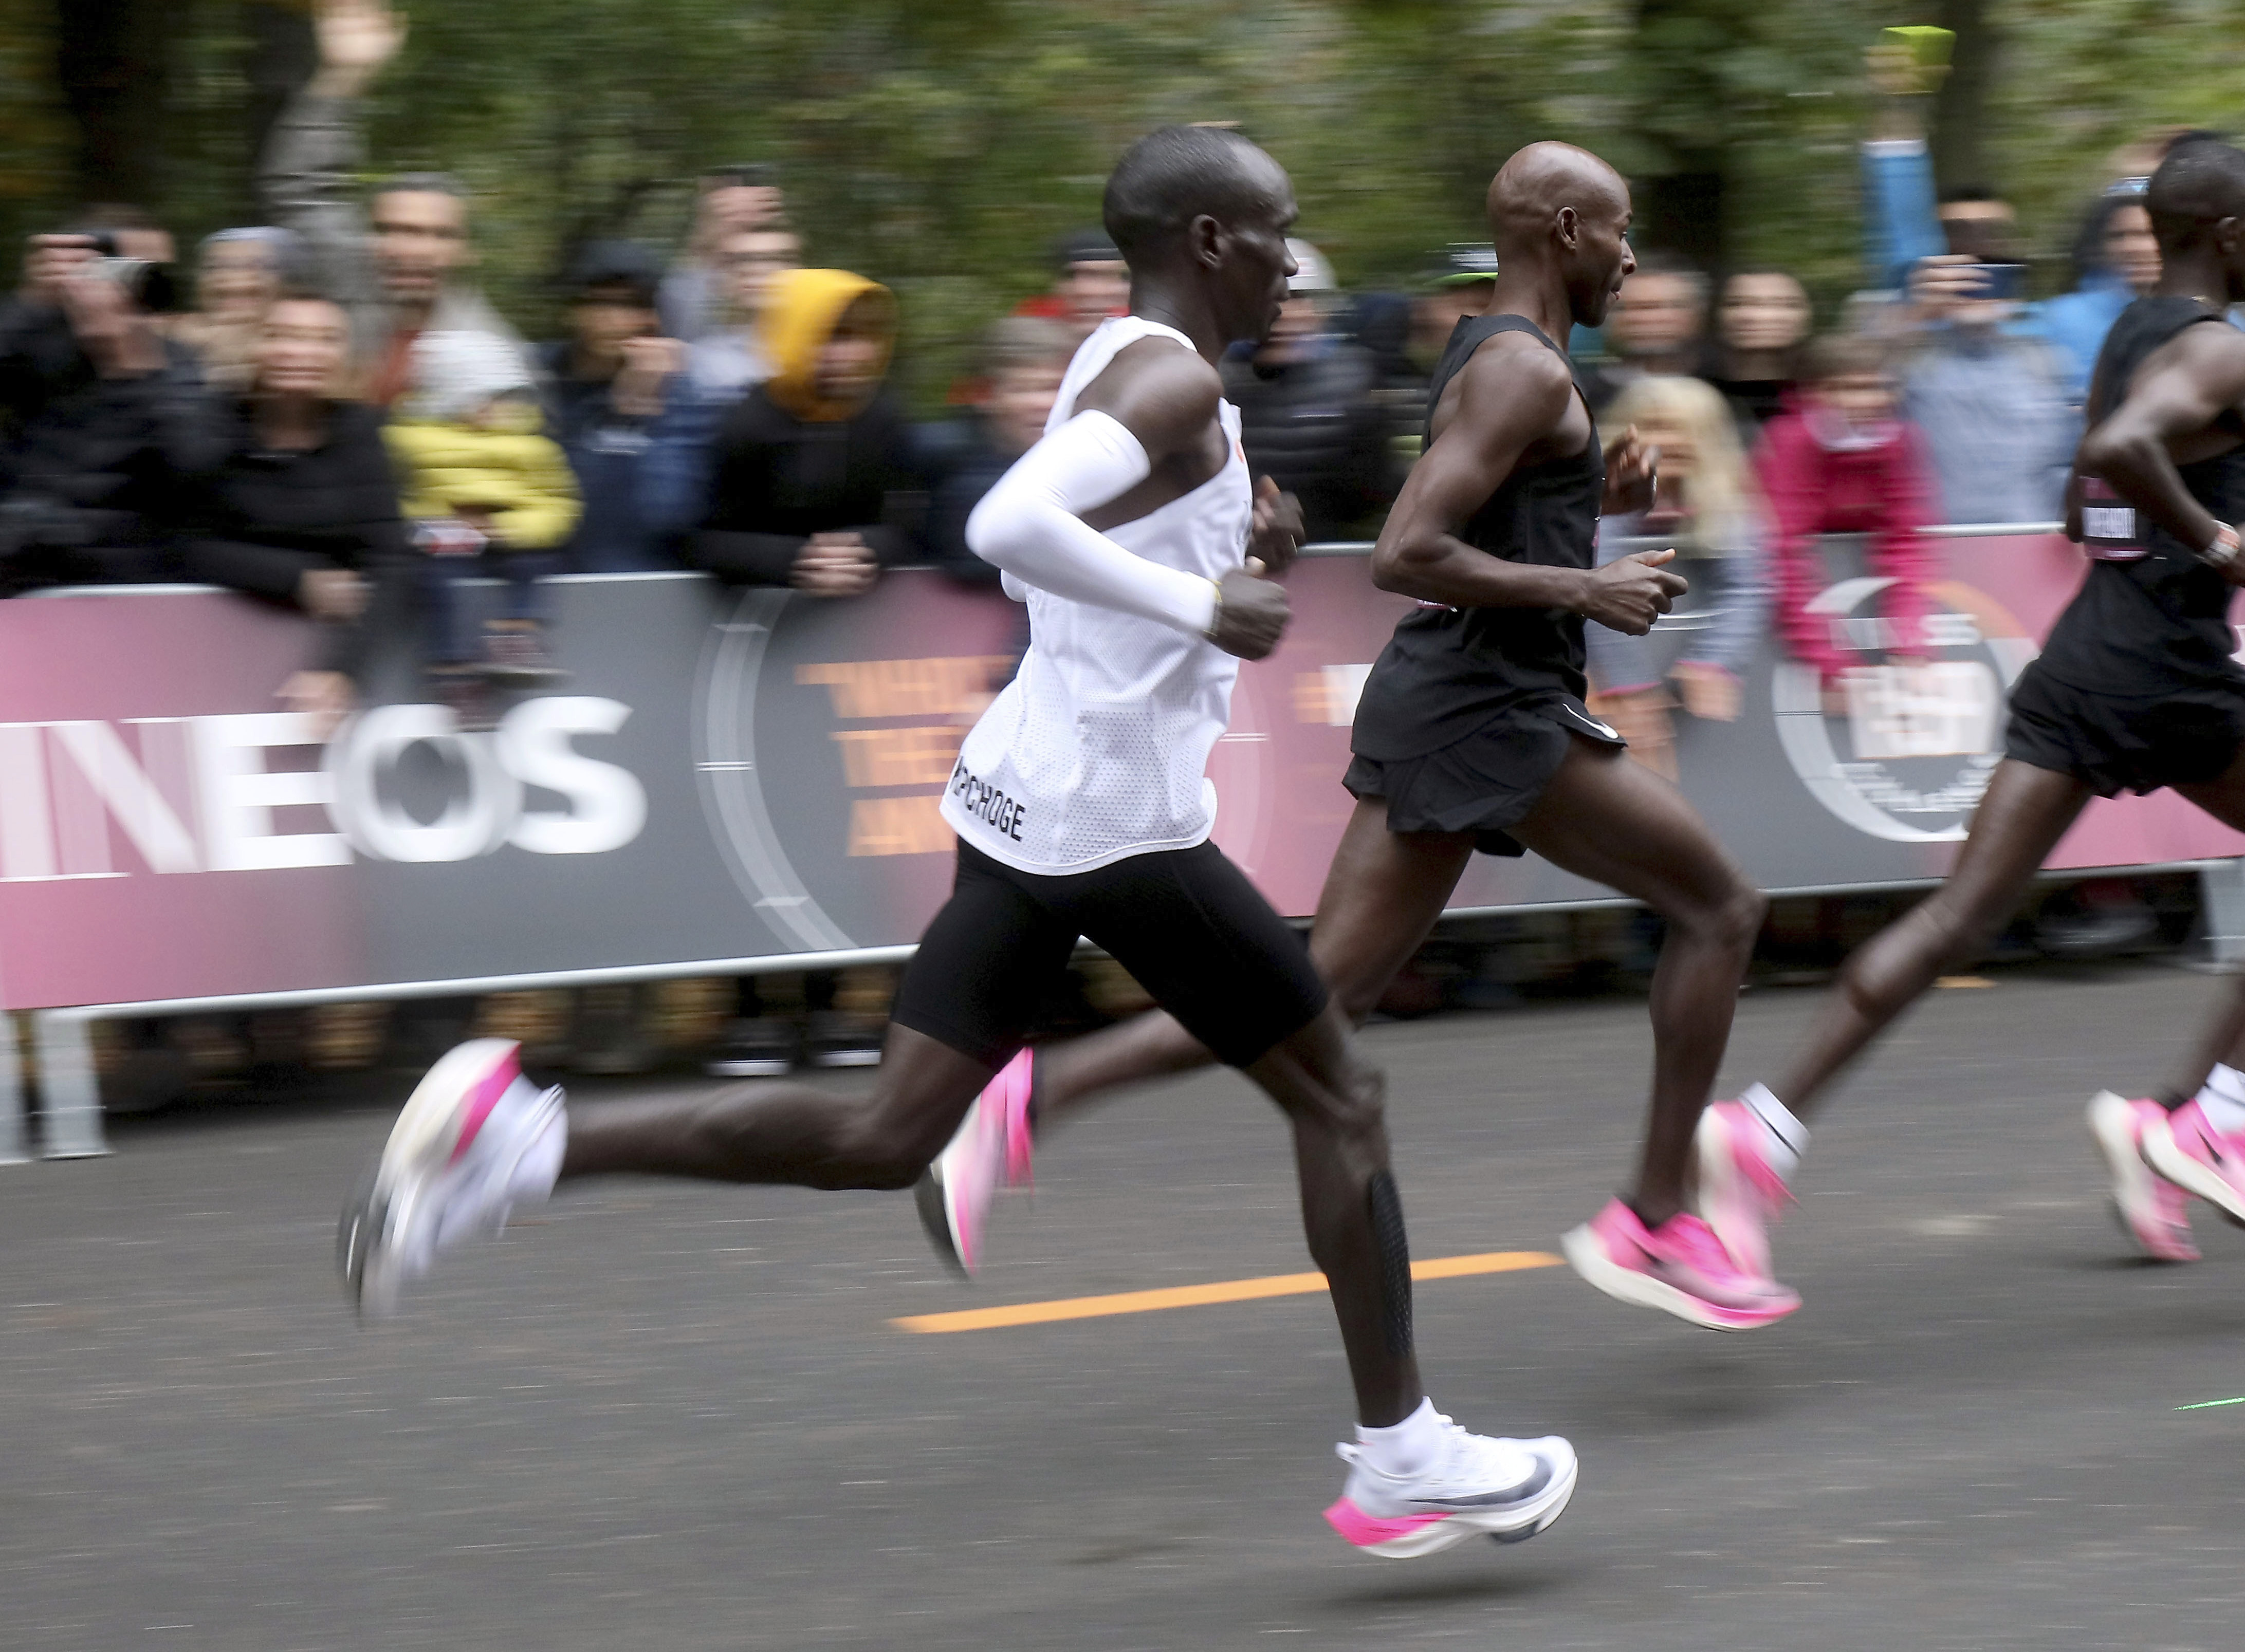 Nike's Vaporfly shoe changing marathon game